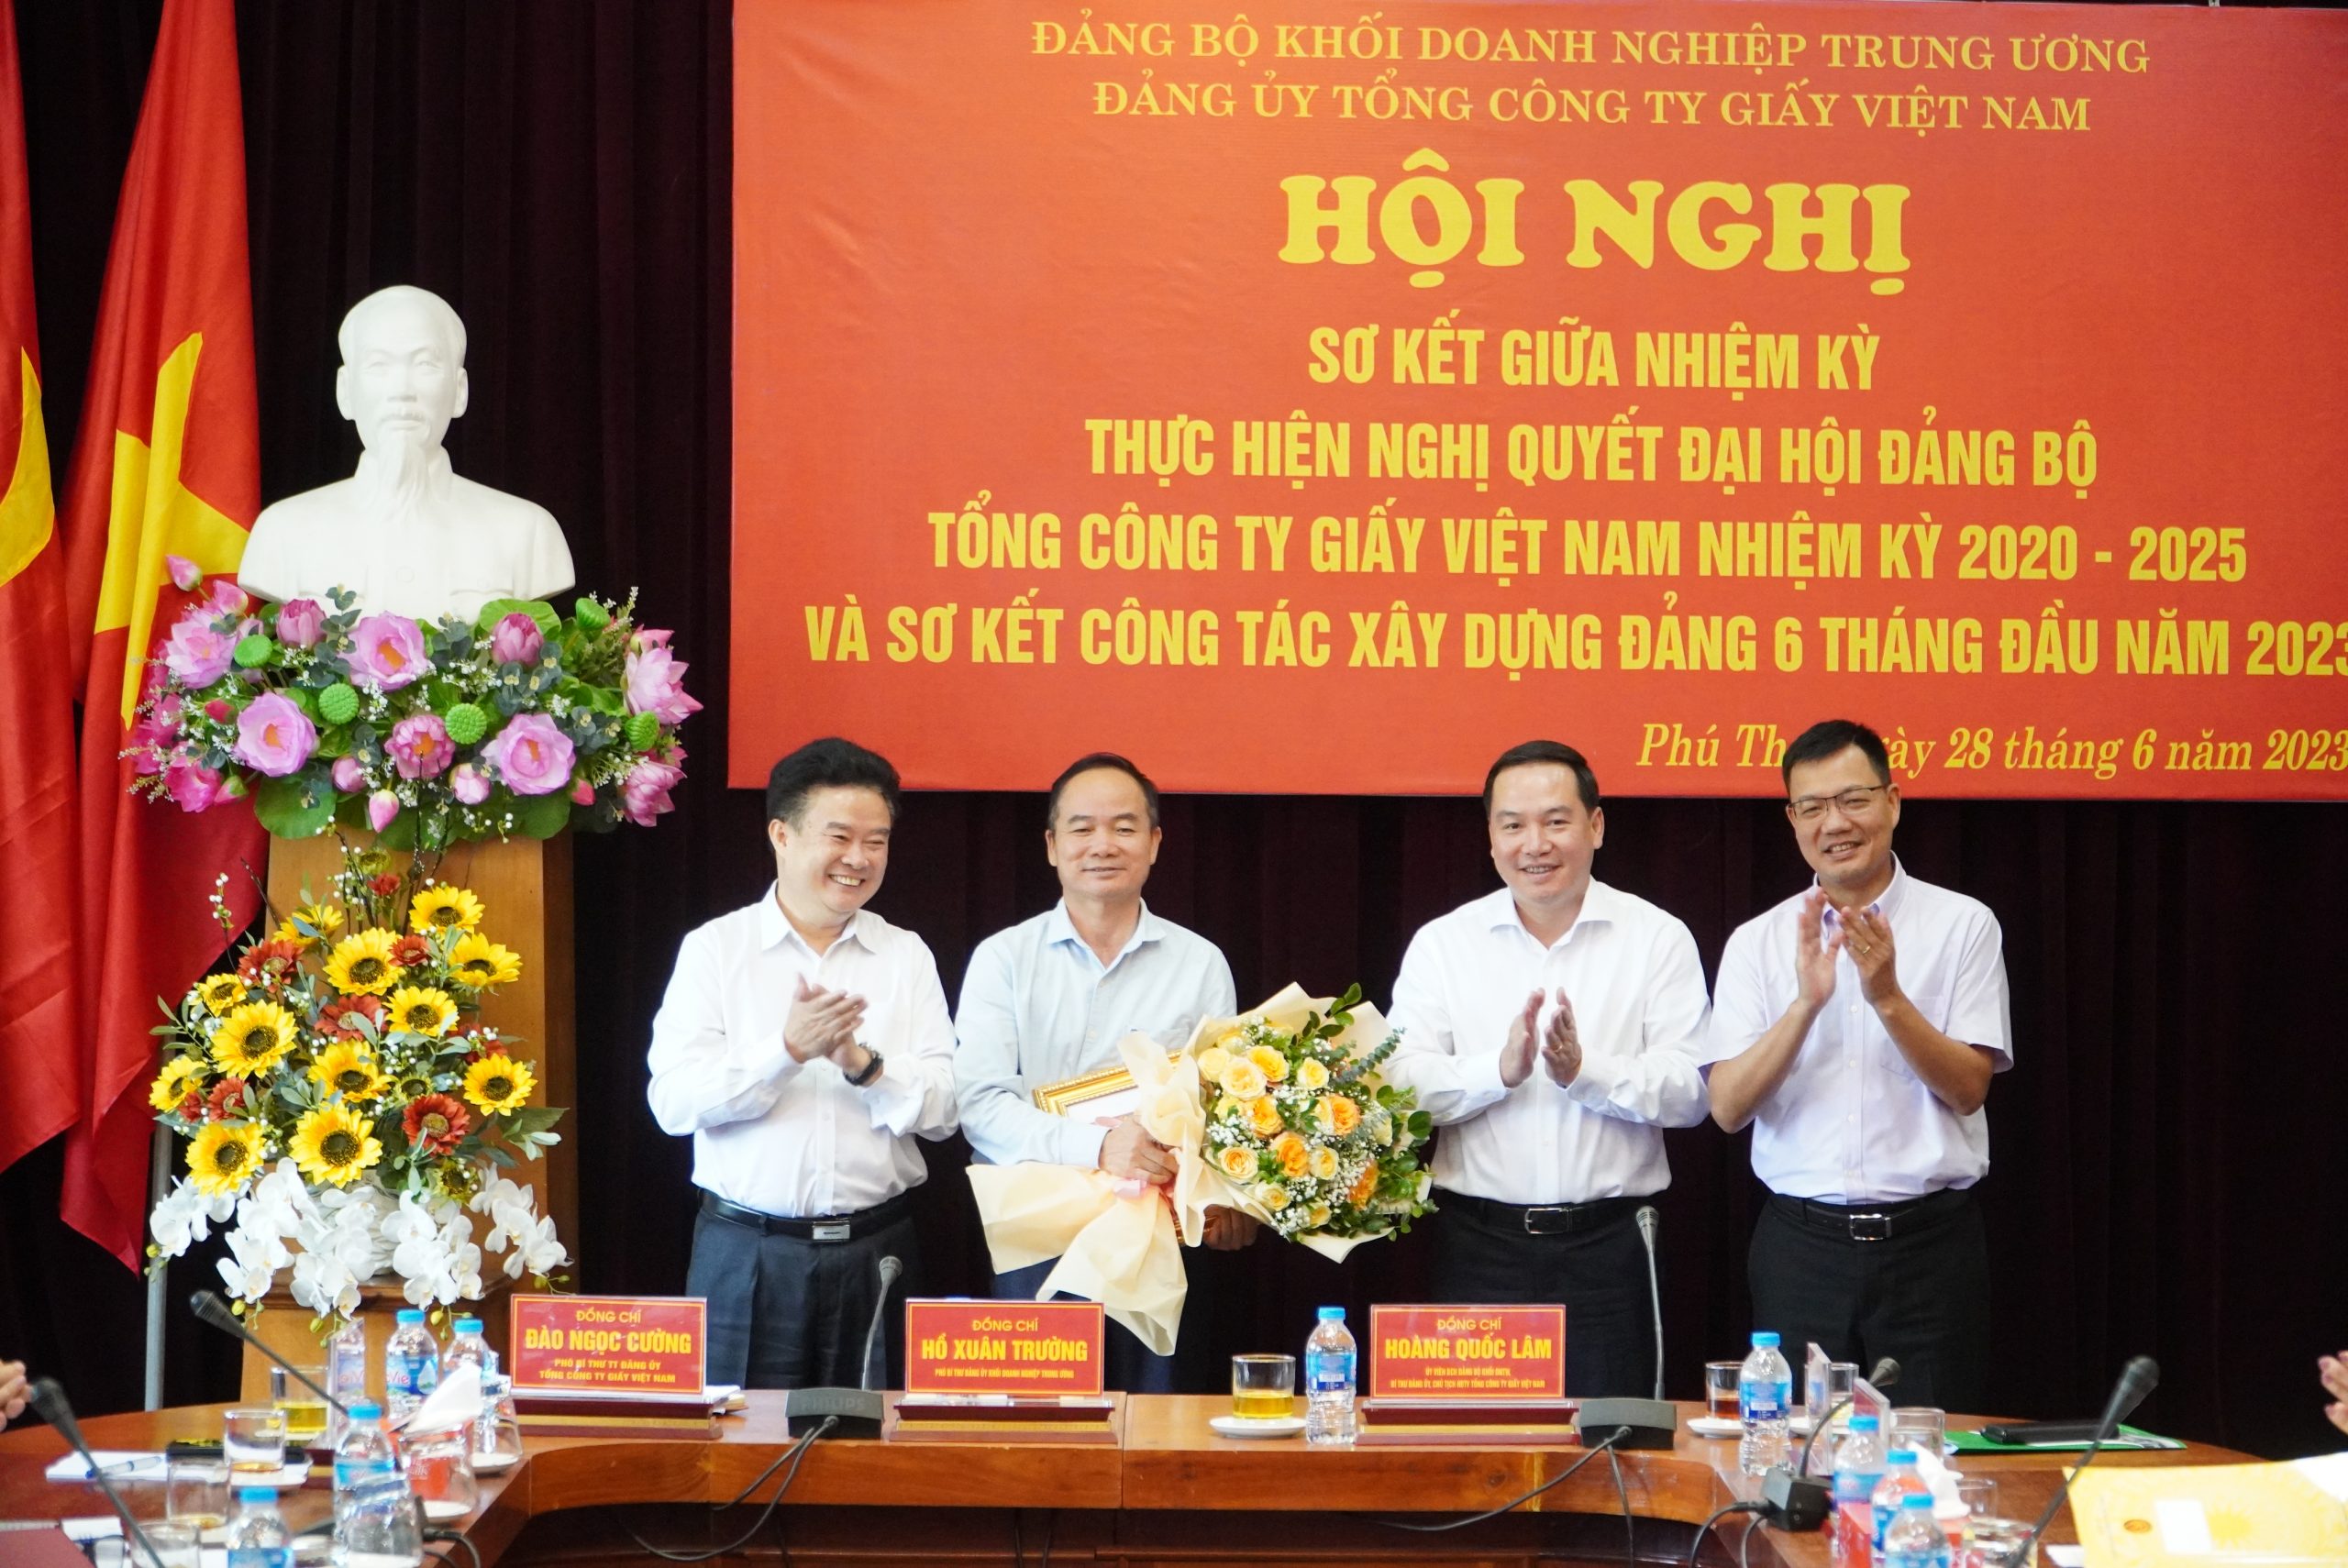 Đồng chí Nguyễn Xuân Mai - Bí thư Đảng ủy, Giám đốc Nhà máy Hóa chất vinh dự nhận Bằng khen của Đảng ủy Khối Doanh nghiệp Trung ương.